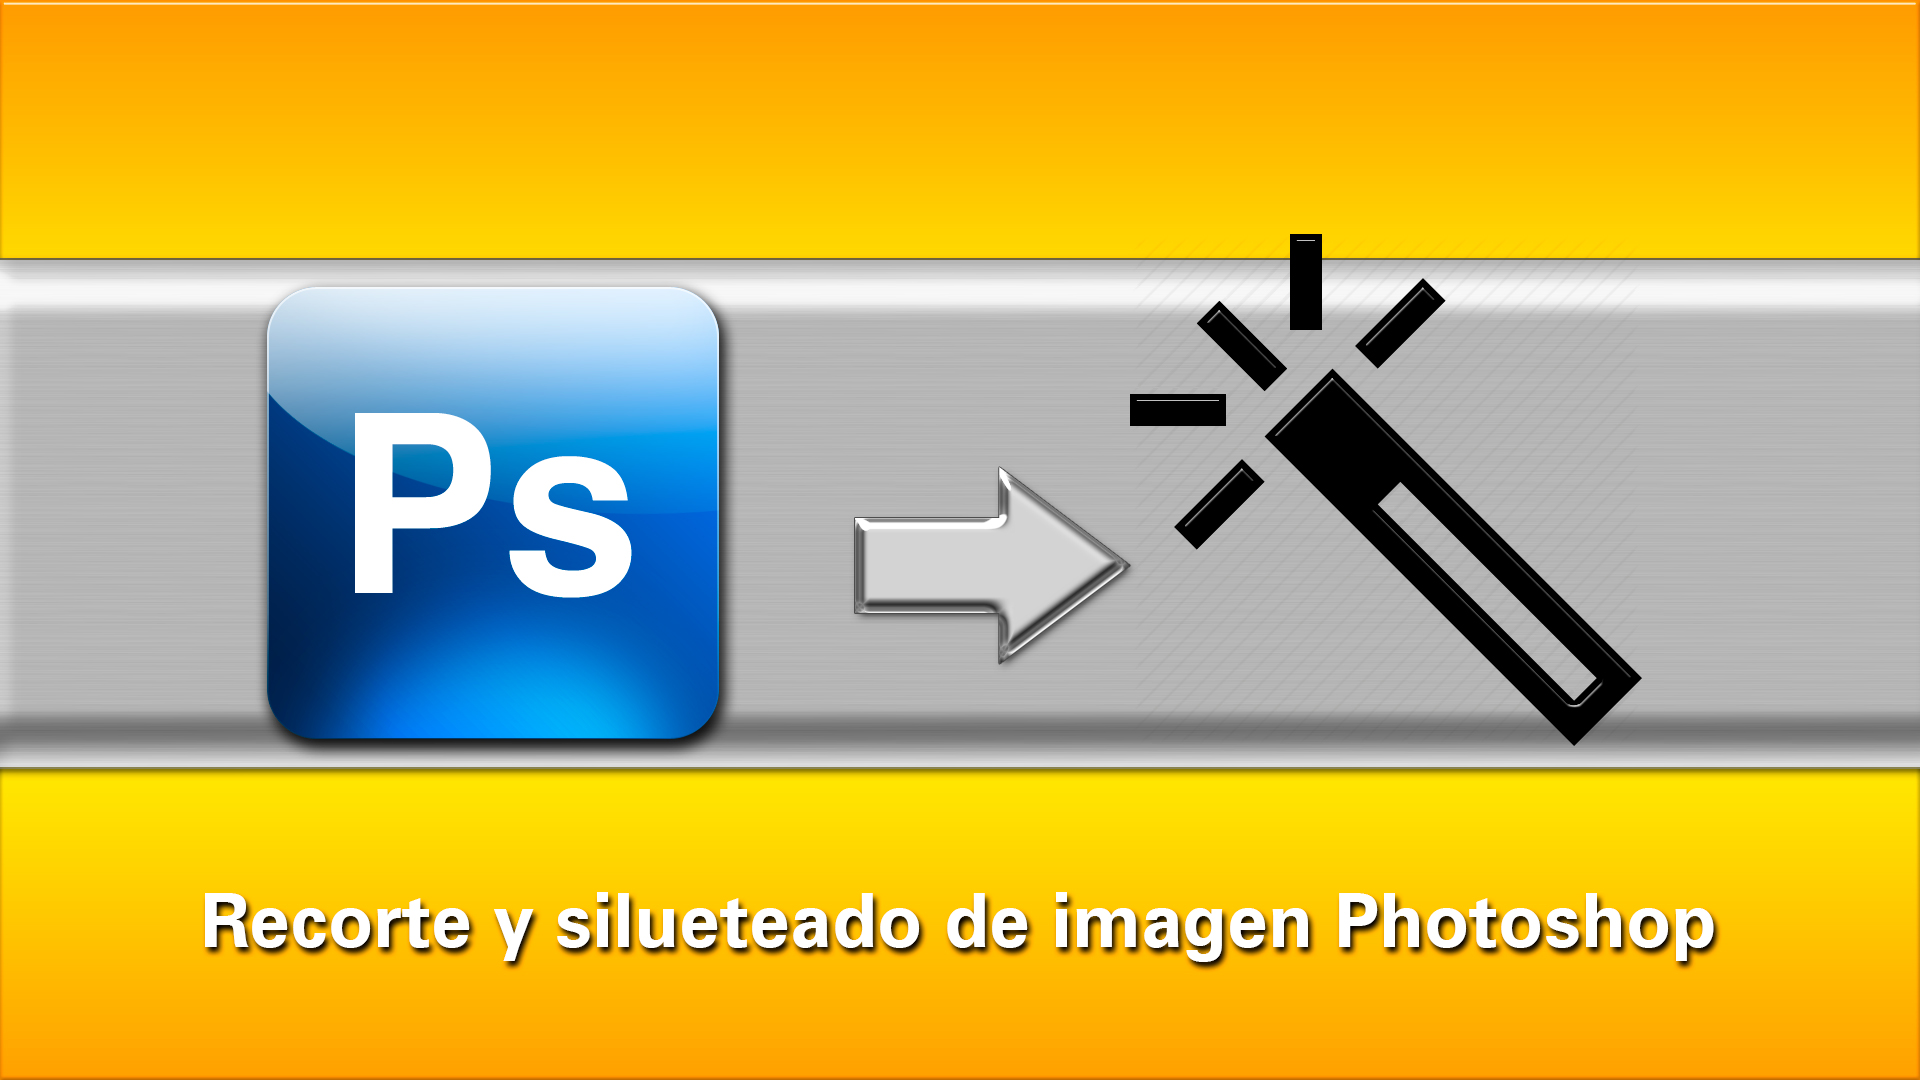 Tutorial Photoshop: recorte silueteado básico de imagen con Photoshop